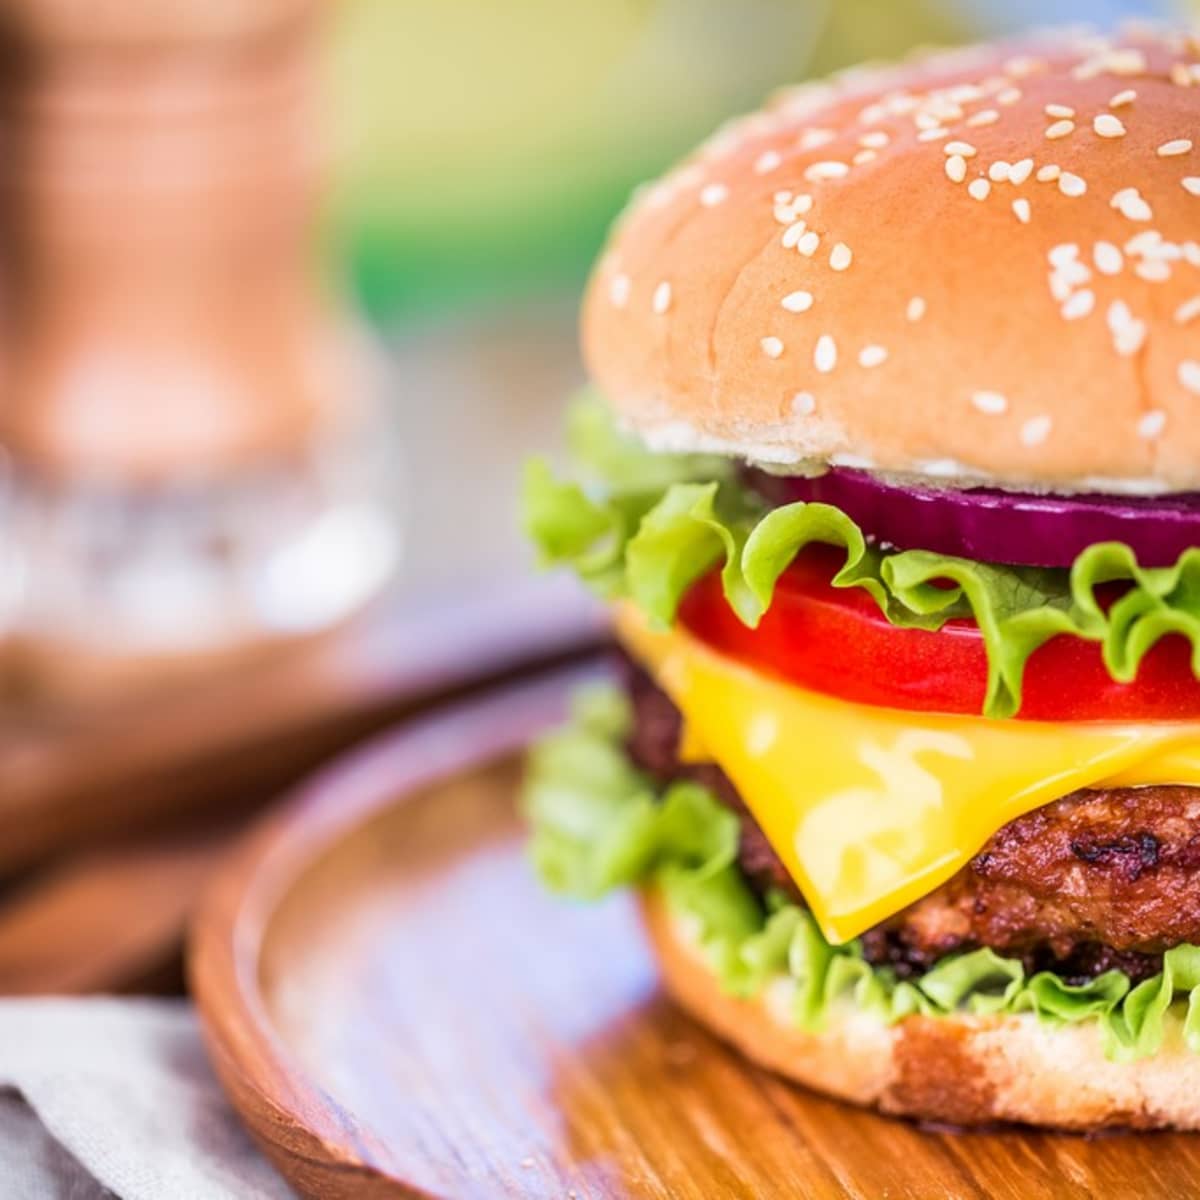 50 Best Burger Restaurant Names - Delishably